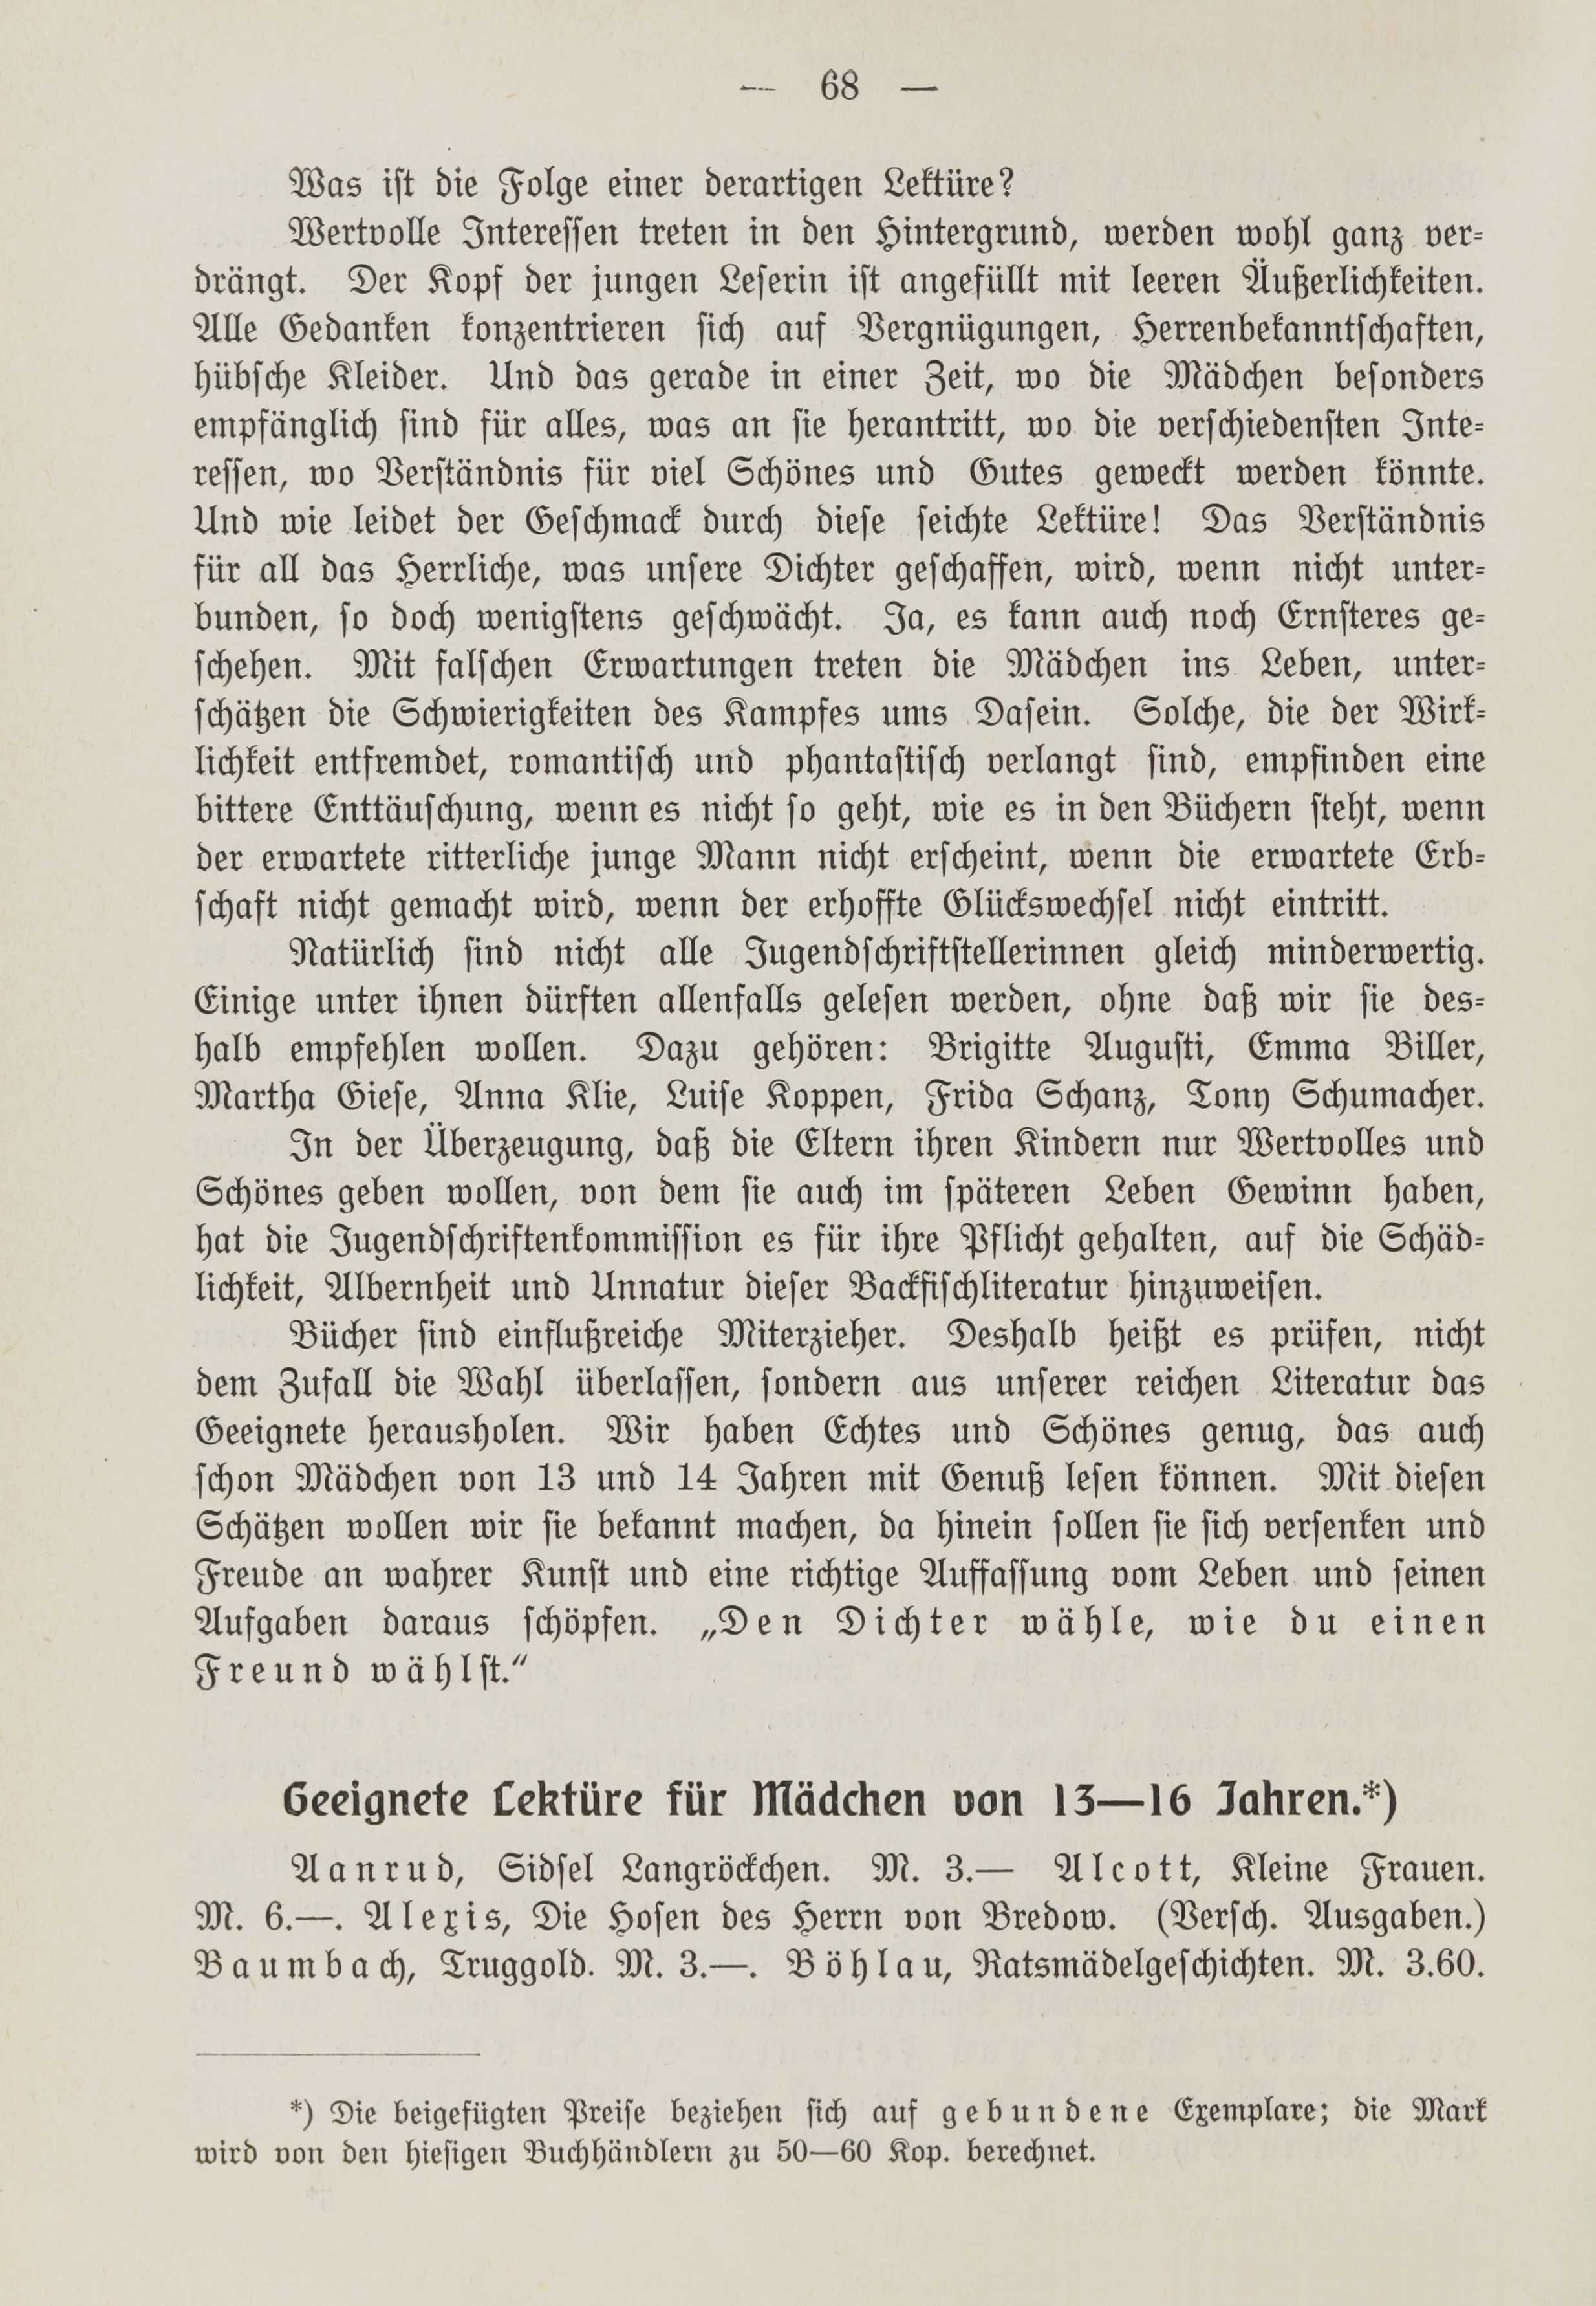 Deutsche Monatsschrift für Russland [1] (1912) | 75. (68) Haupttext